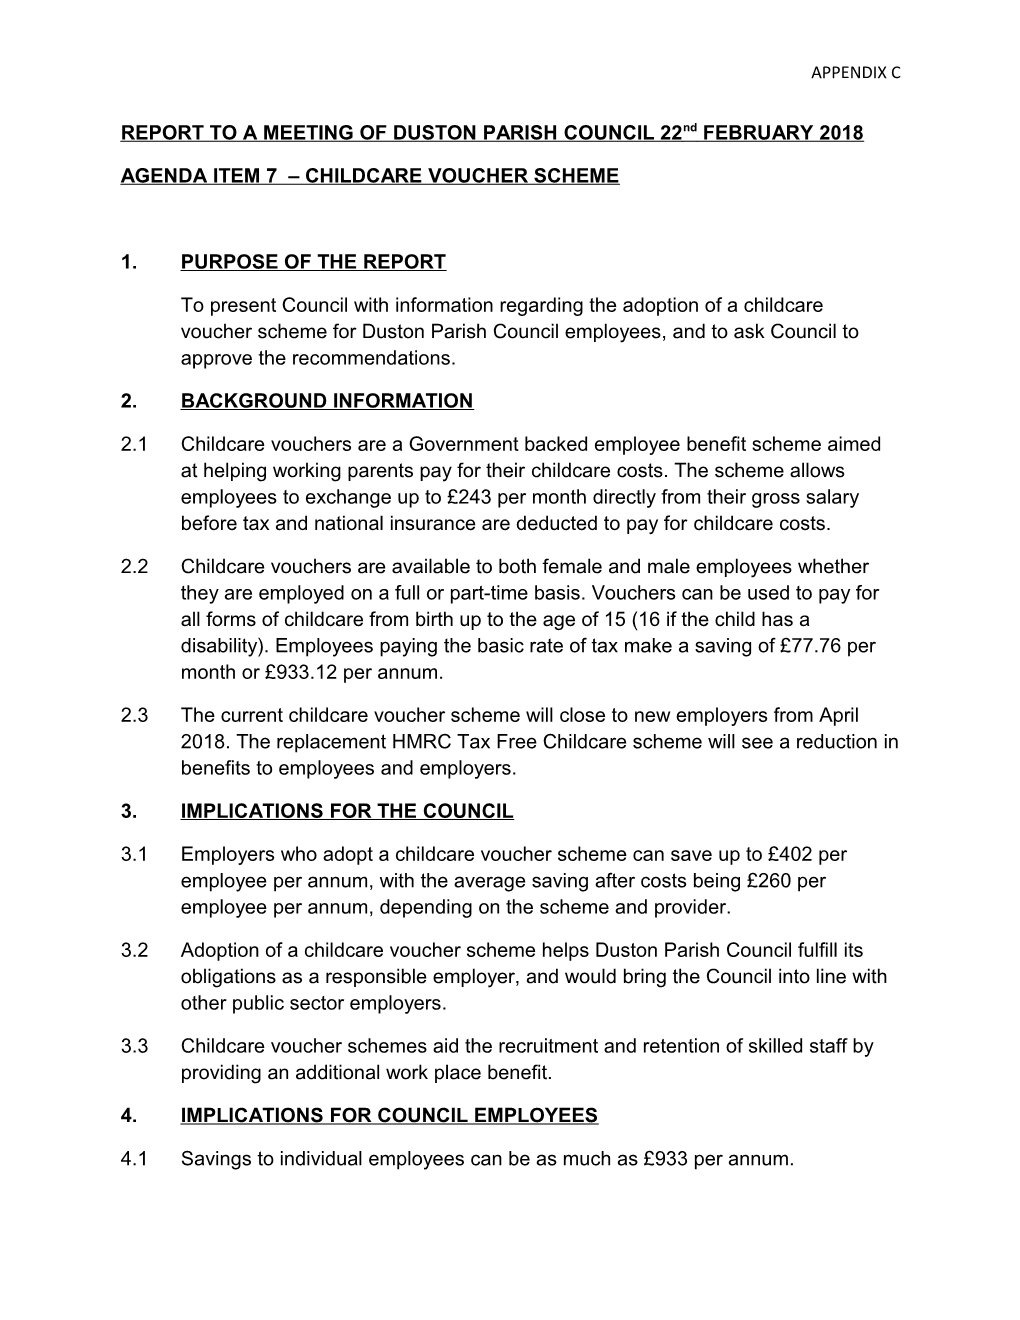 Agenda Item 7 Childcare Voucher Scheme